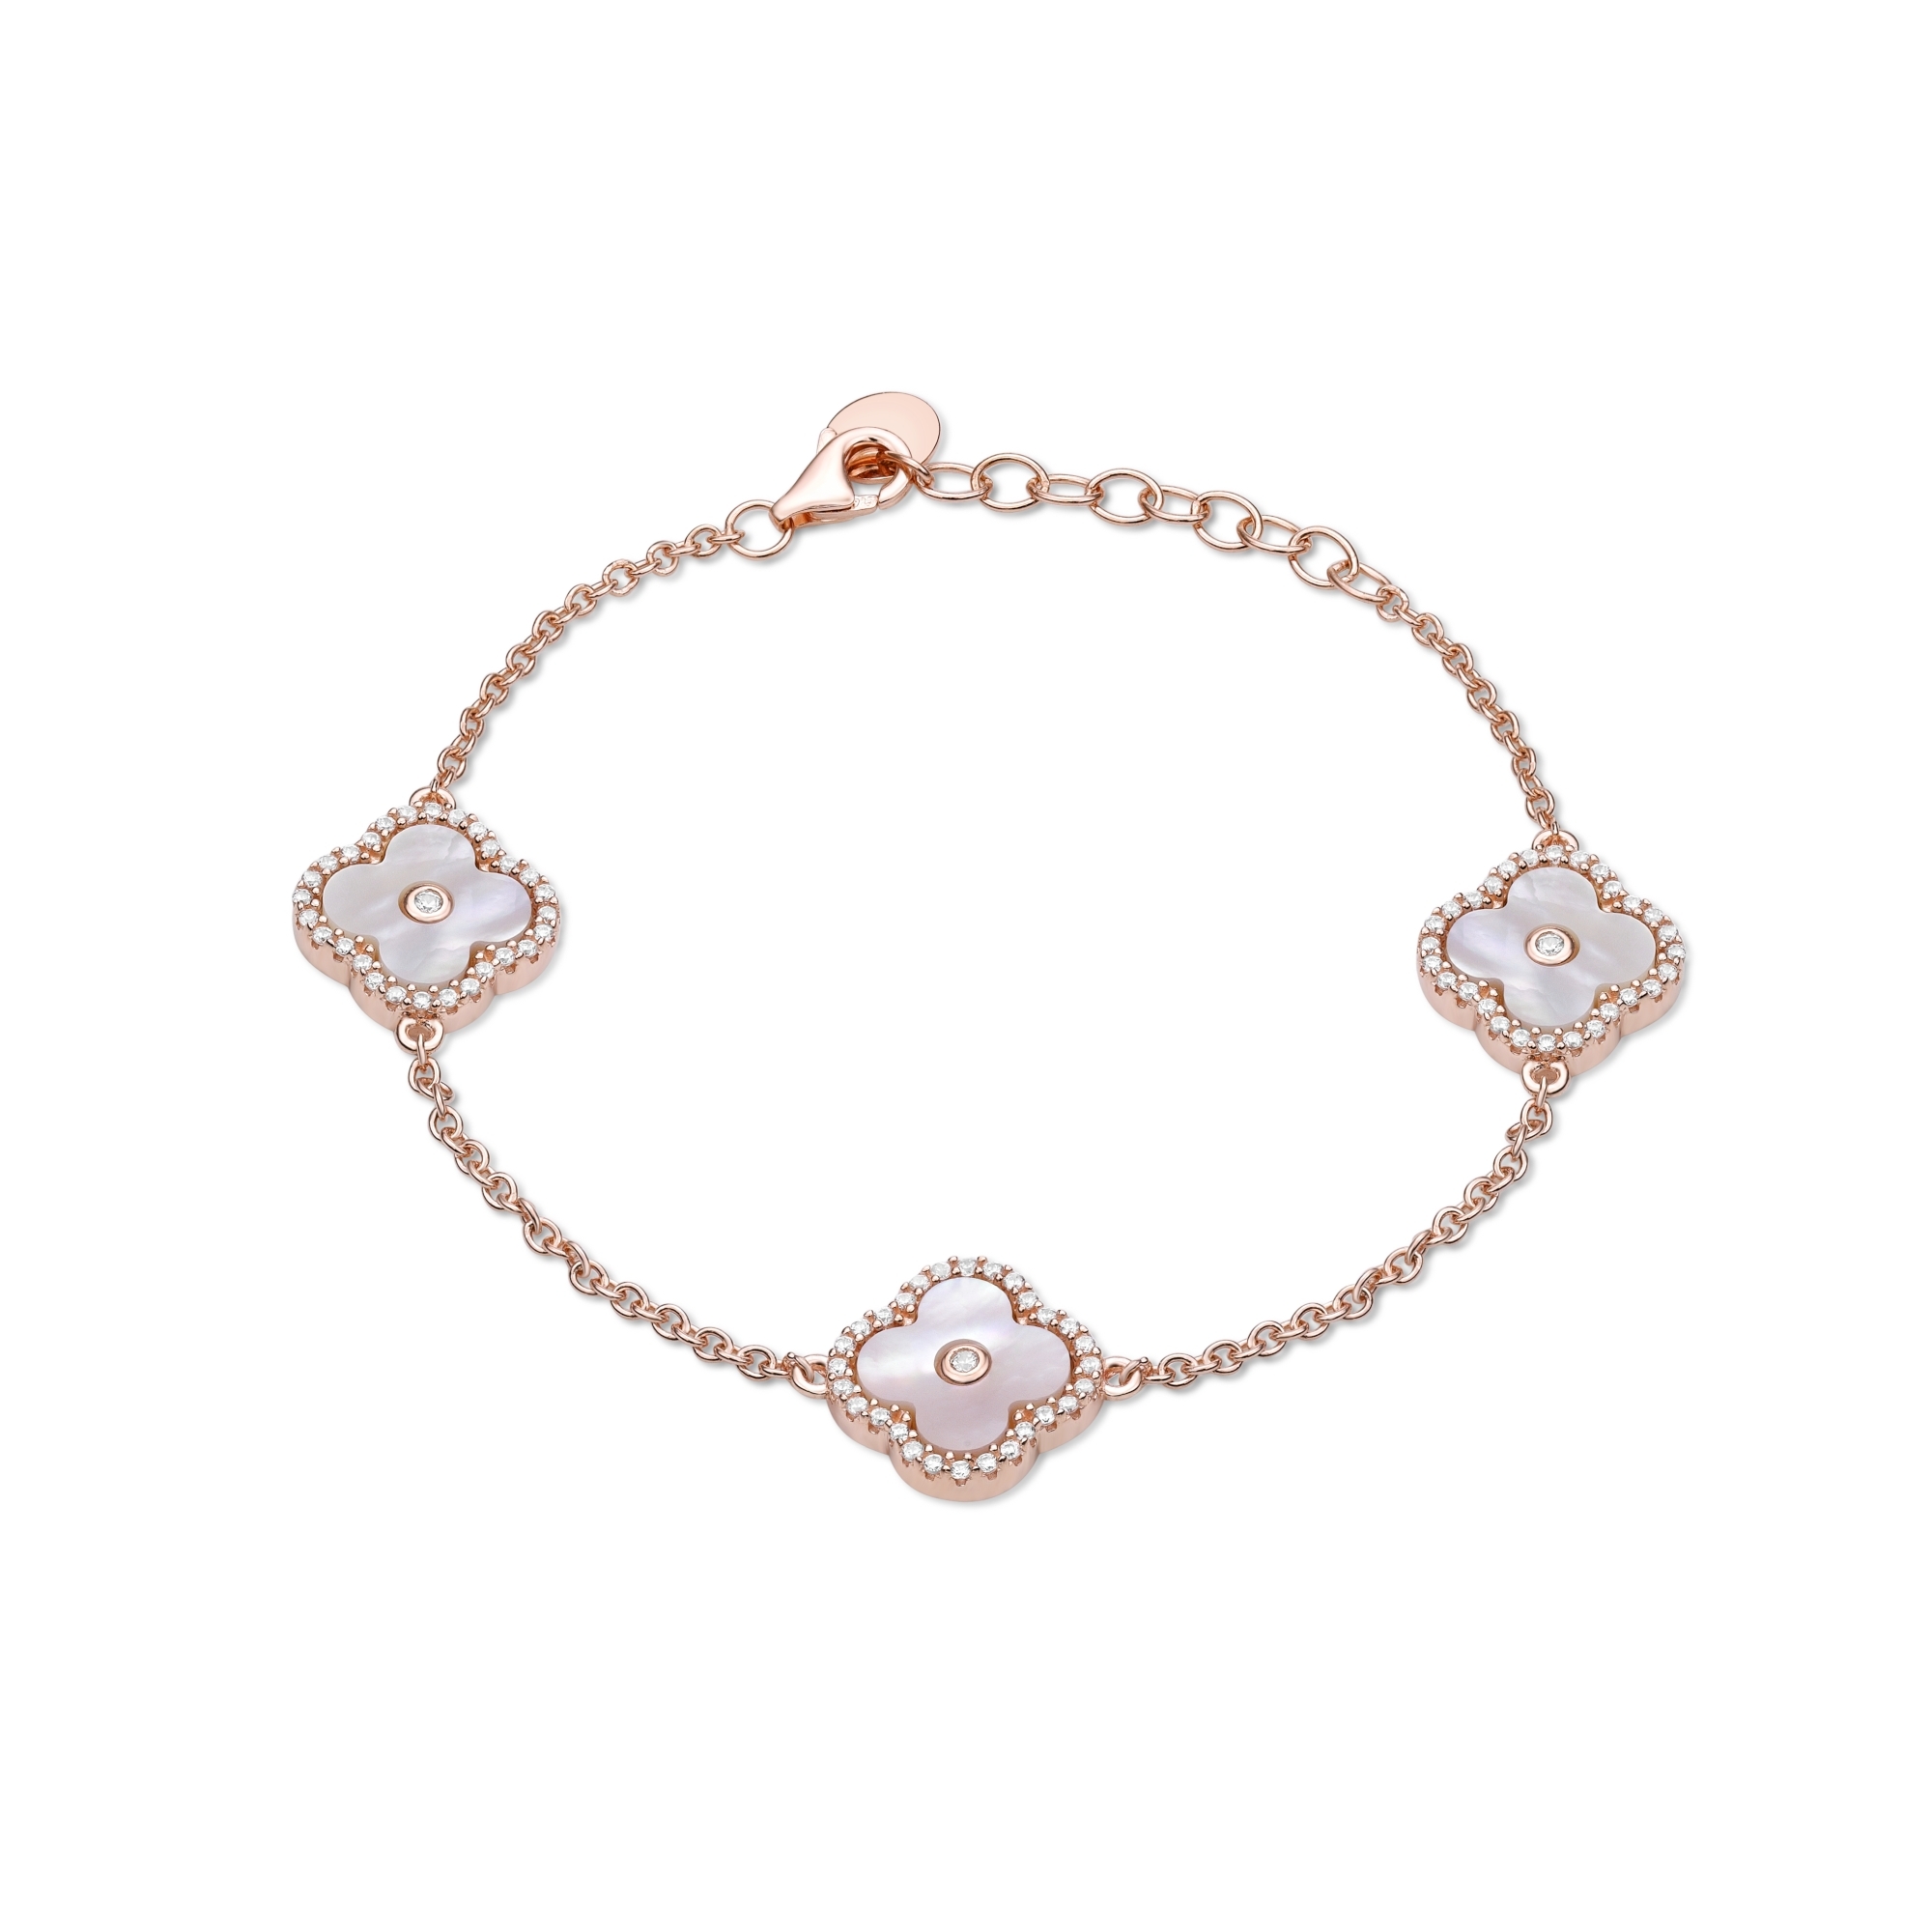 50973-bracelet-fashion-jewelry-sterling-silver-50973-1-1.jpg